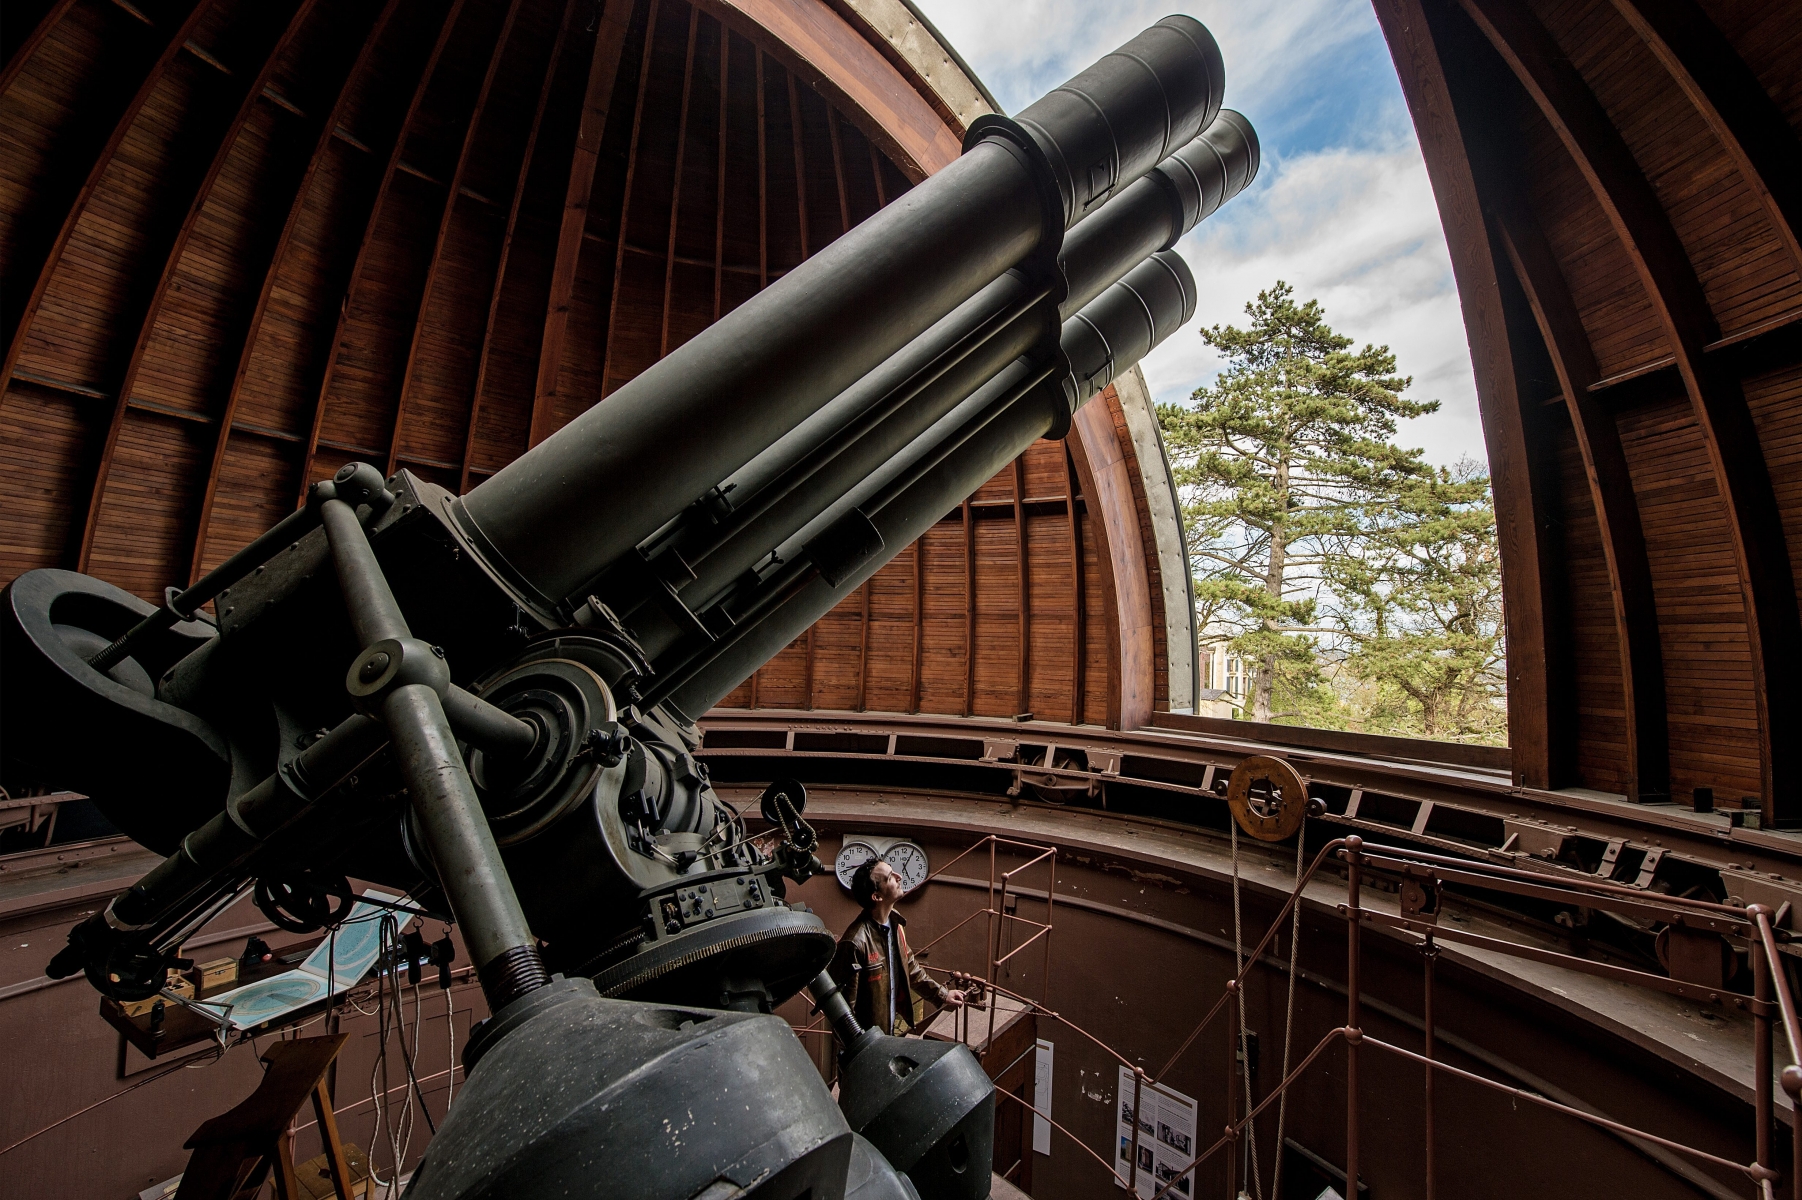 Coupole de l'observatoire: Lunette du pavillon Hirsch

Neuchatel, 08 04 2014
PHOTO DAVID MARCHON NEUCHATEL